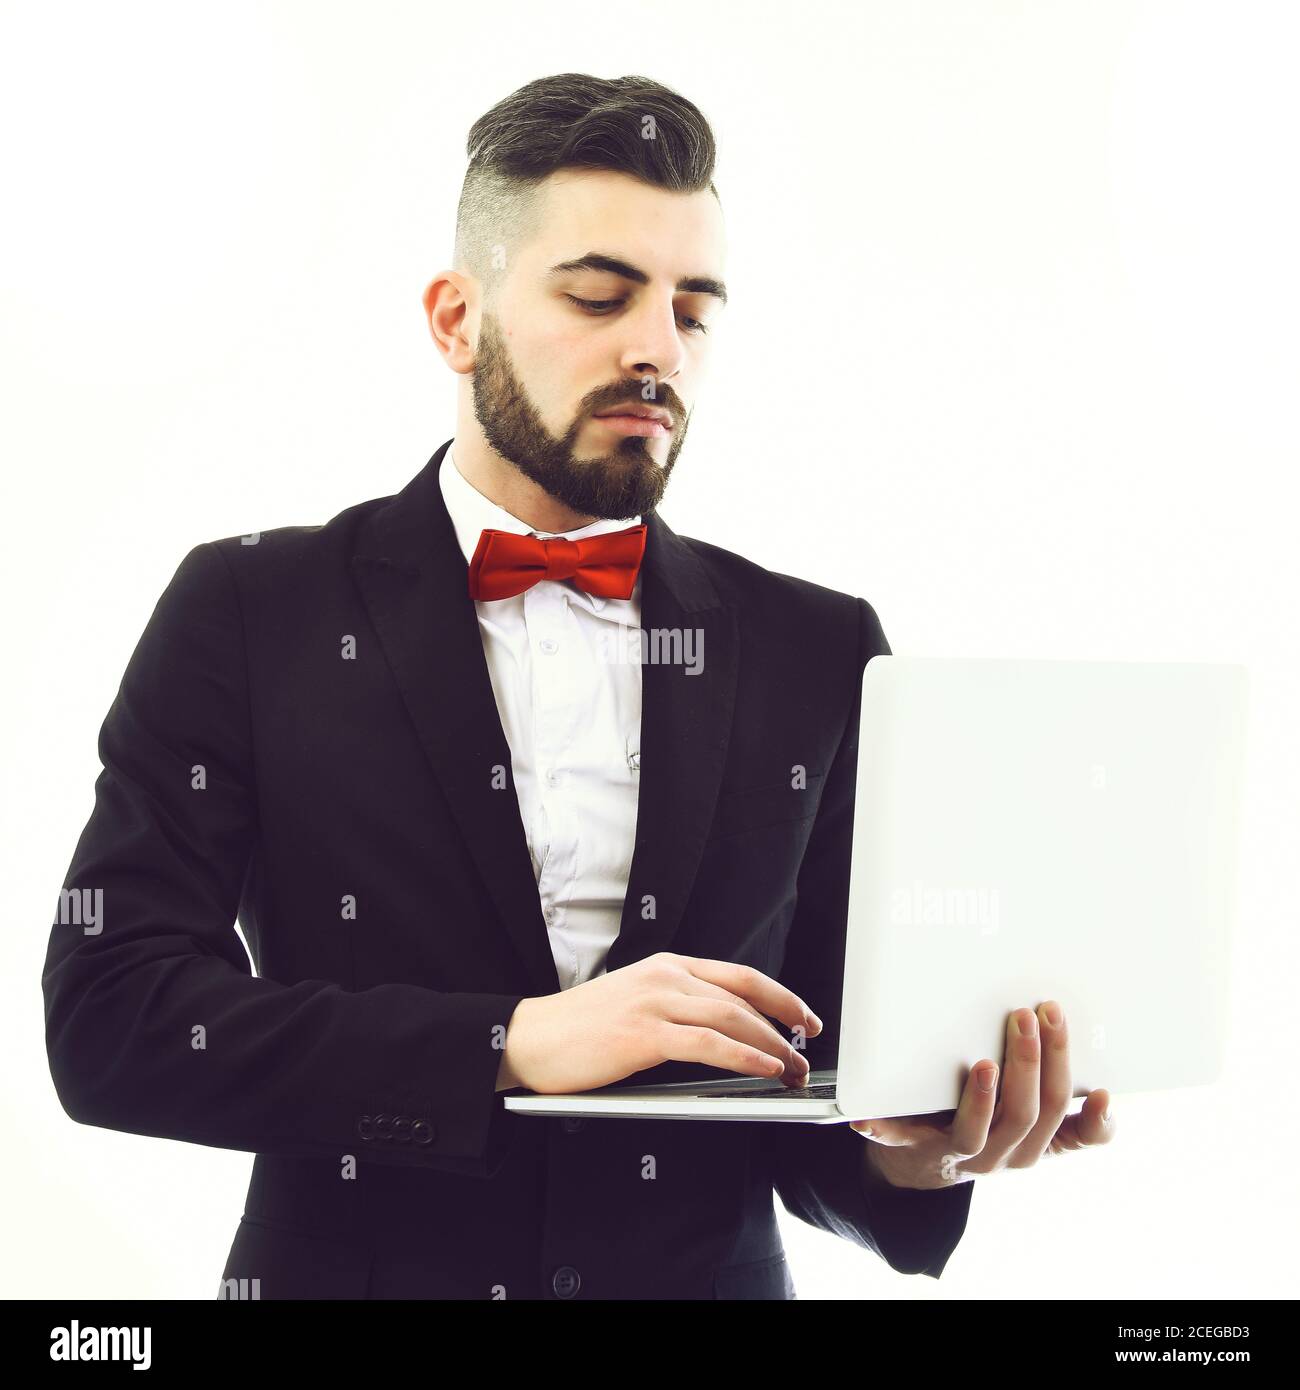 Homme d'affaires avec barbe et noeud papillon rouge tient l'ordinateur  portable blanc et le regarde avec un visage sérieux, isolé sur fond blanc.  Concept d'importance et d'affaires Photo Stock - Alamy